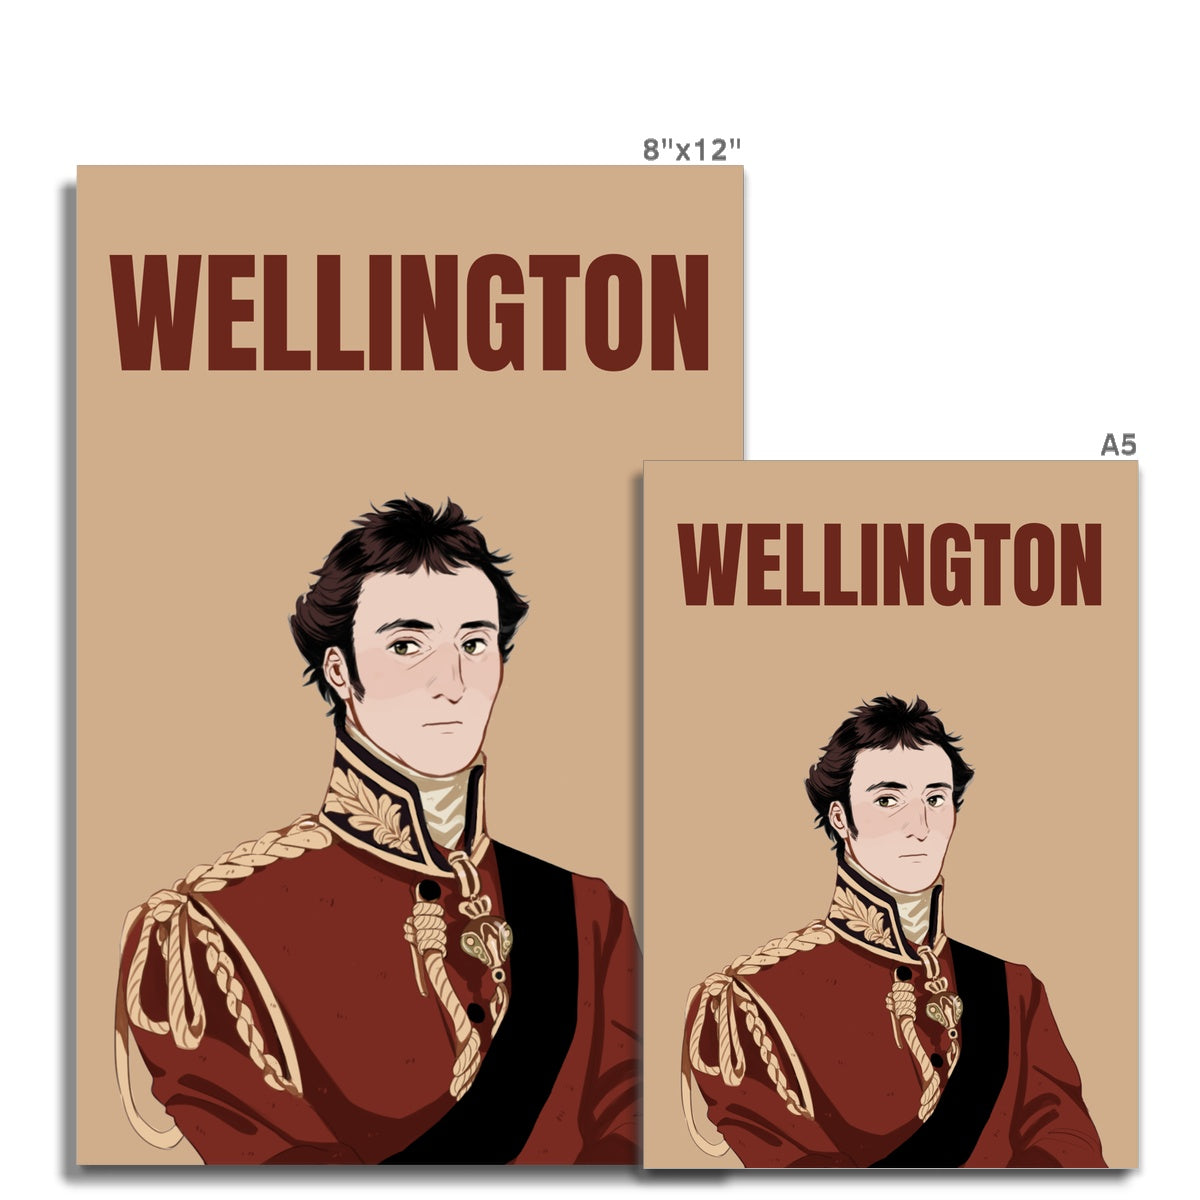 Duke of Wellington Manga Style Art Print - Napoleonic Impressions